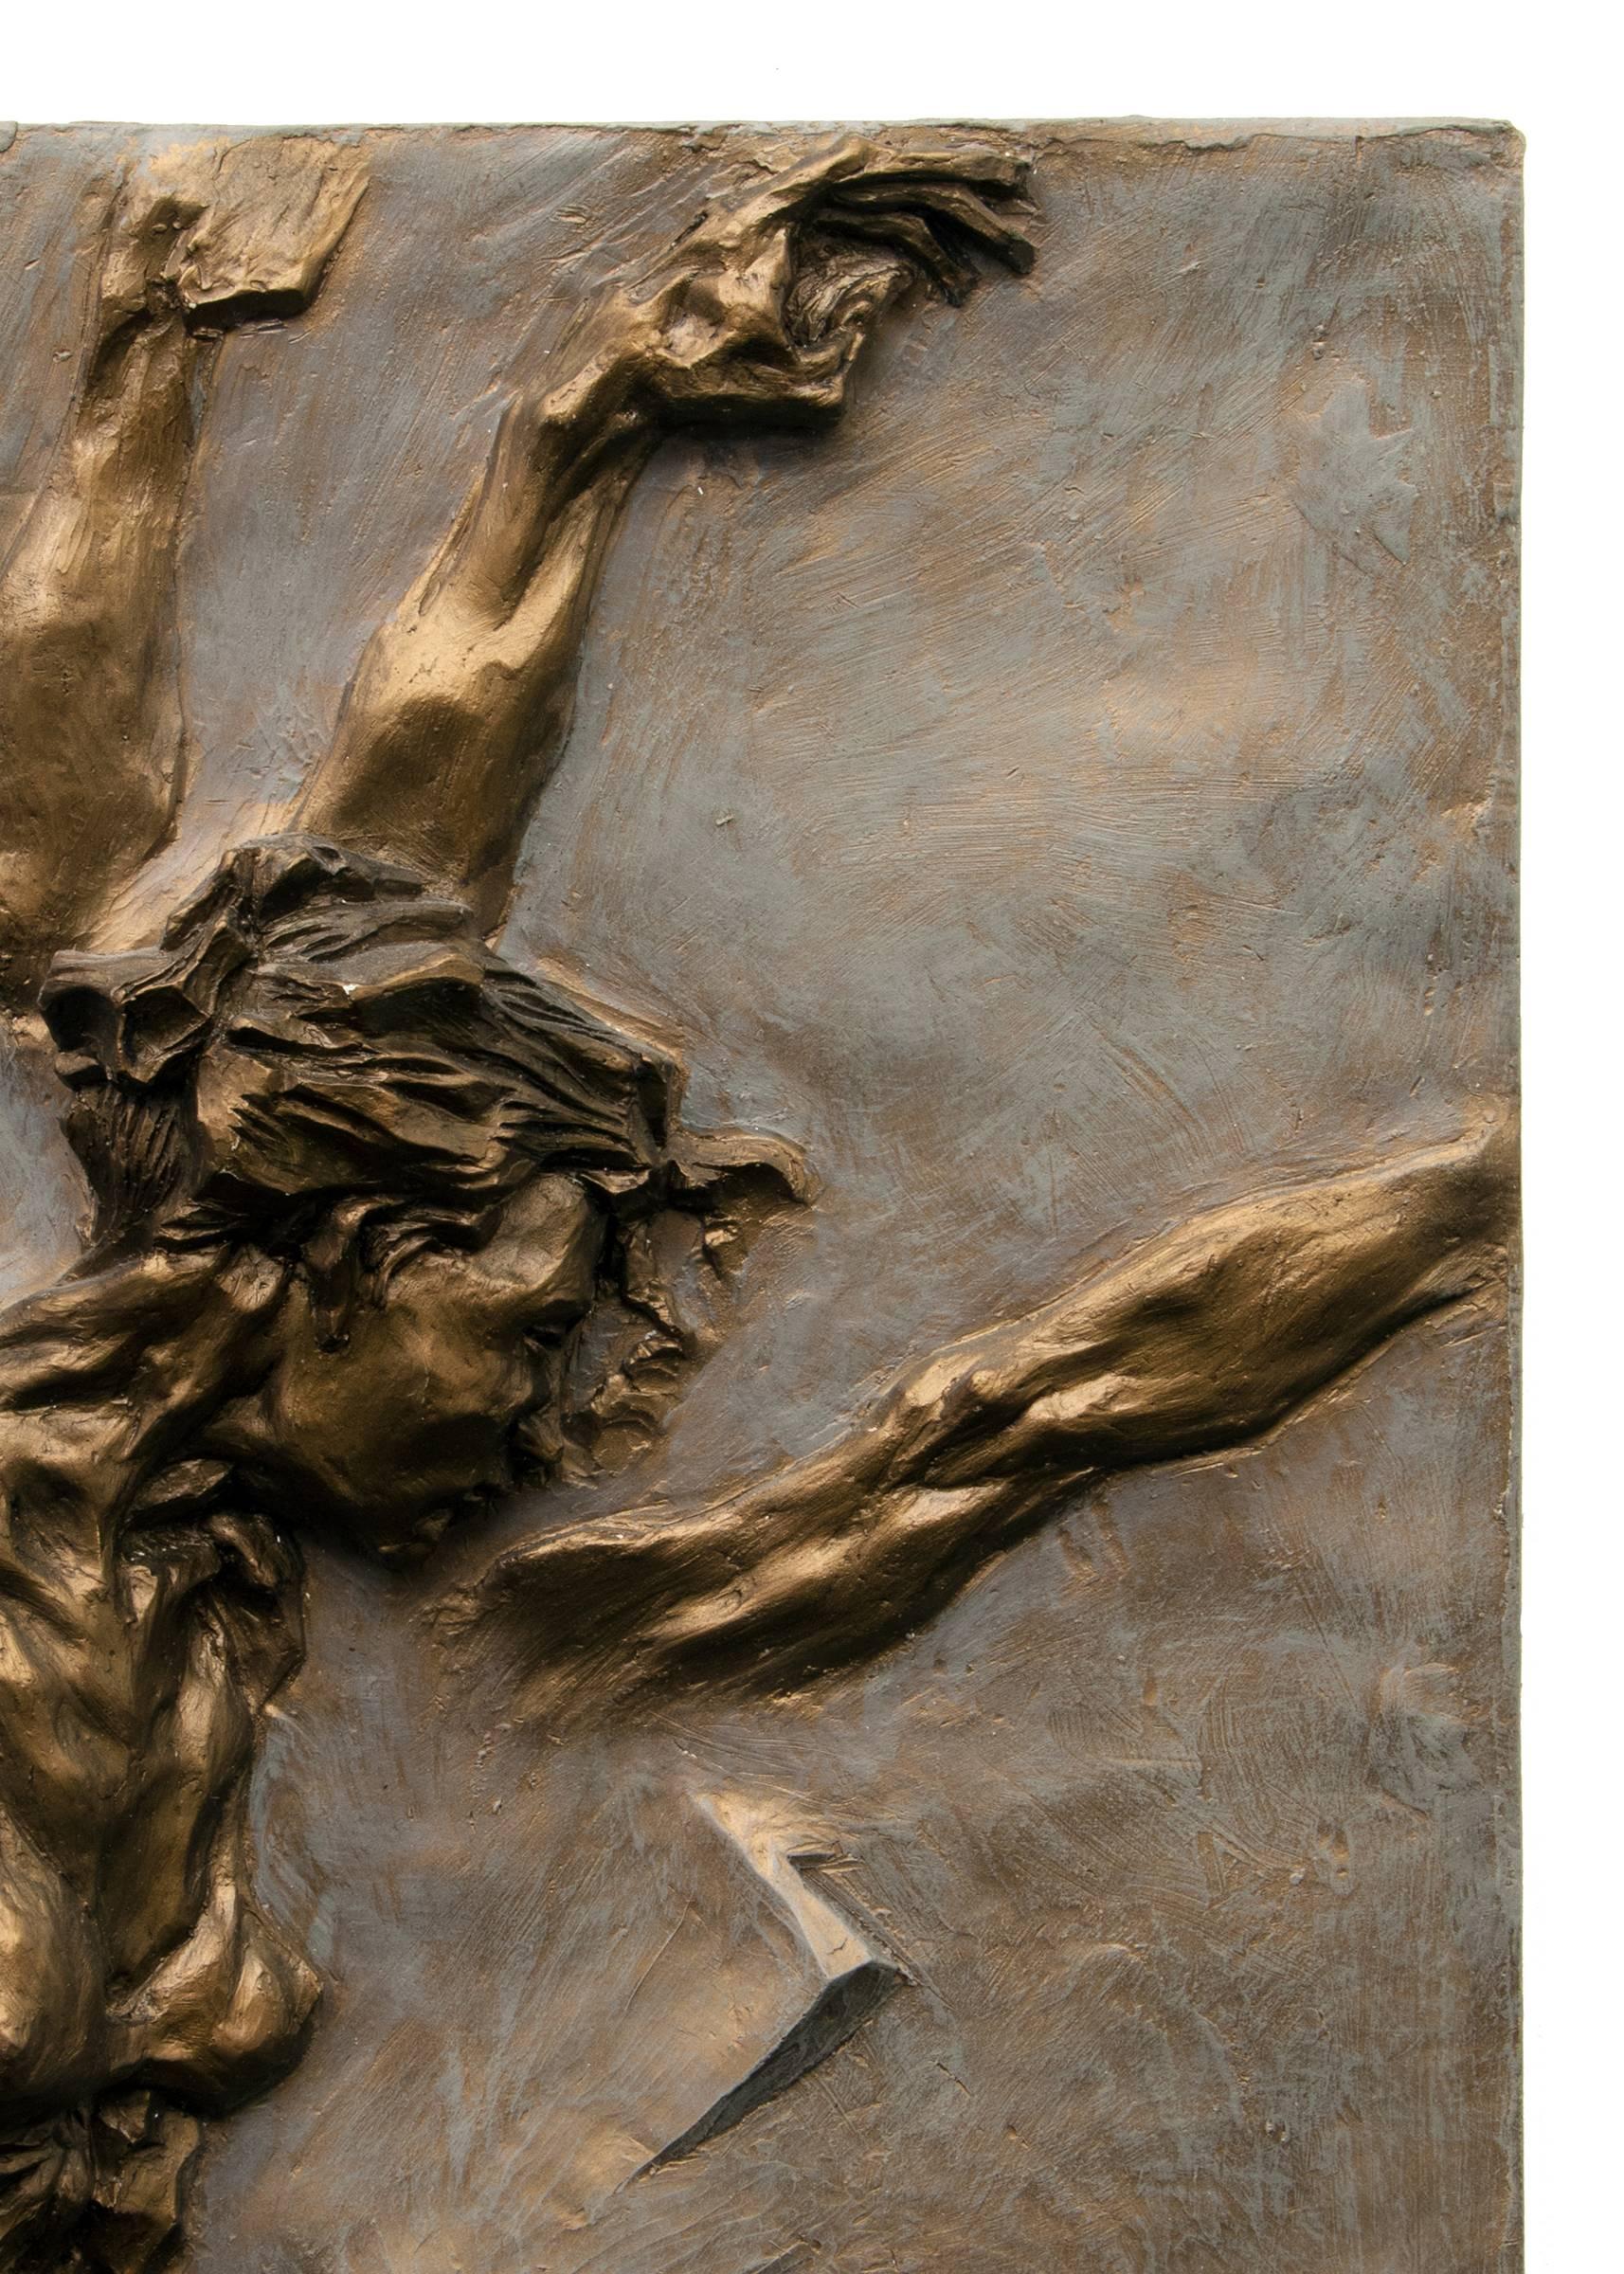 Sculpture figurative en bas-relief d'une danseuse de ballet évoluant dans une pose arabesque, réalisée par l'artiste du Colorado/Missouri, Eric Bransby (1916-1920). Bronze, polymère coulé en forton.  
Provenance : Collection S de l'artiste.
Eric